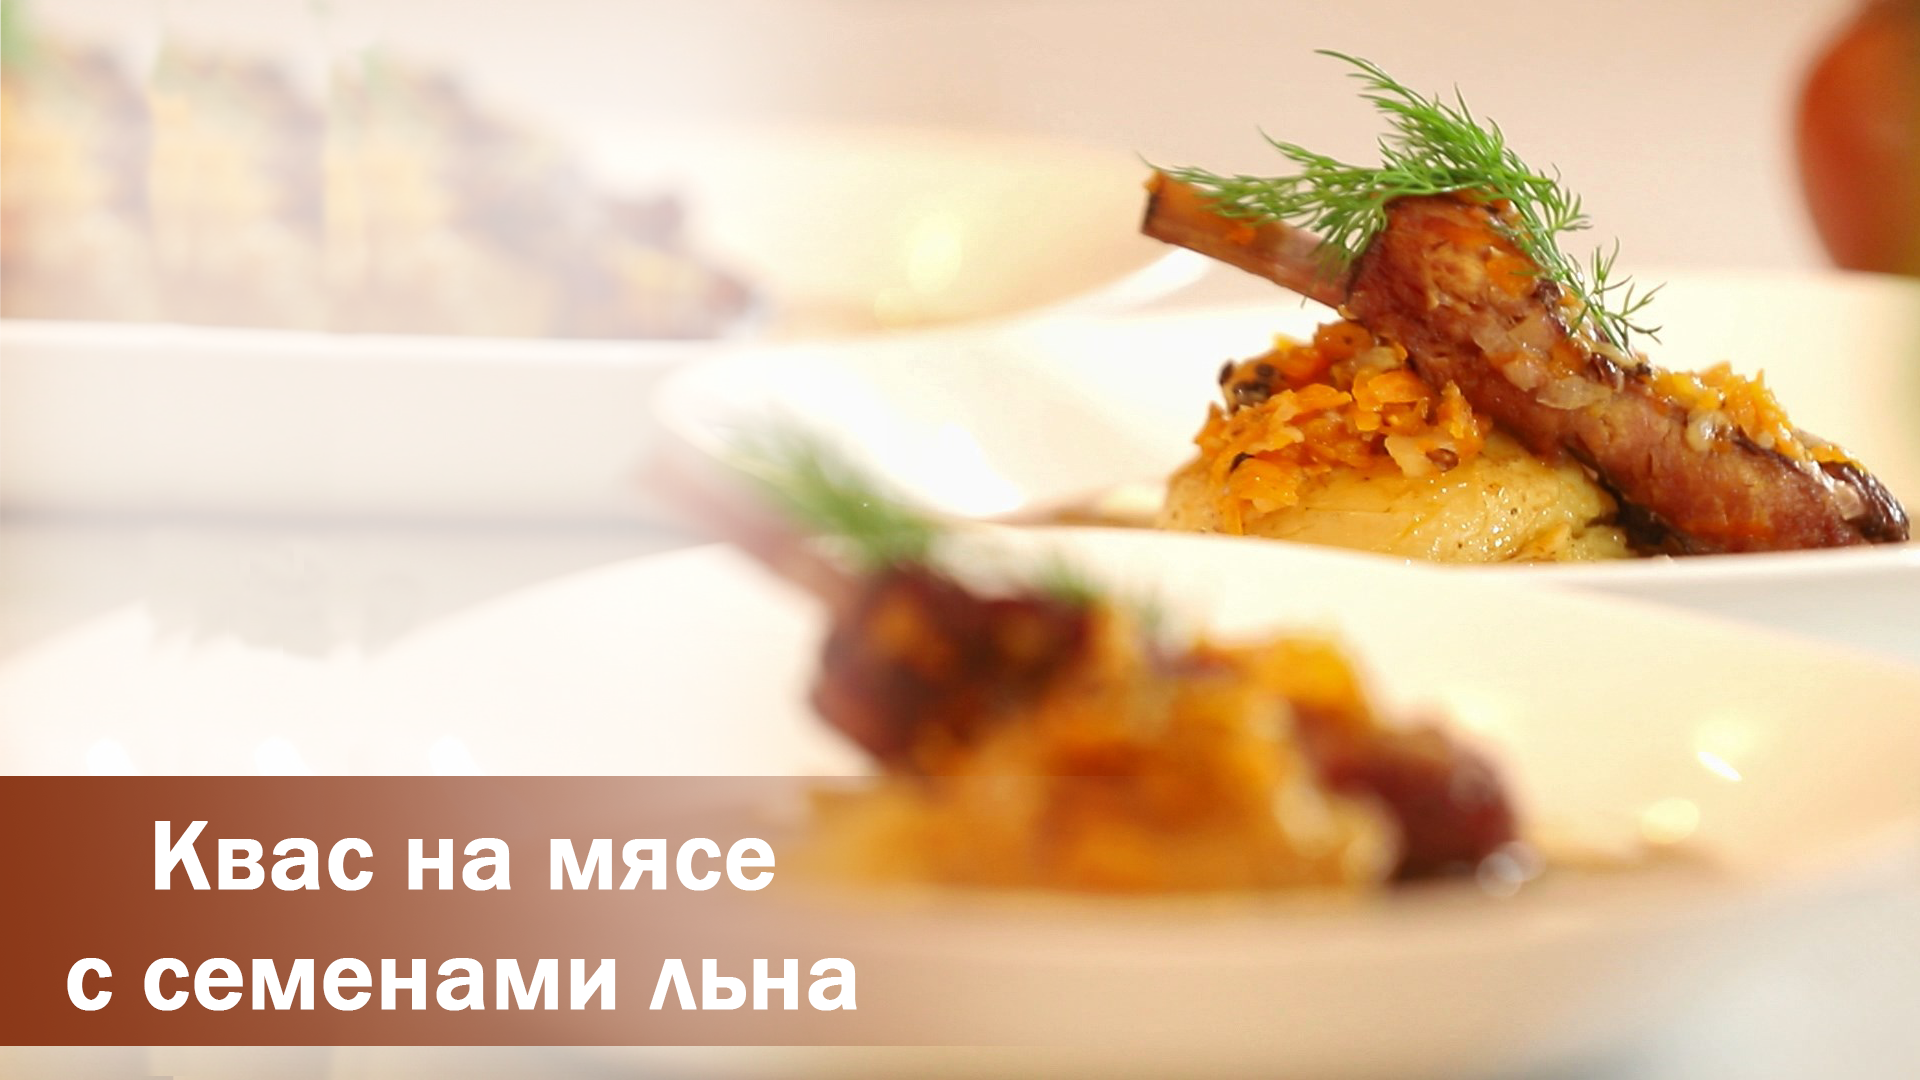 Квас на мясе – пошаговый рецепт в «Белорусской кухне»